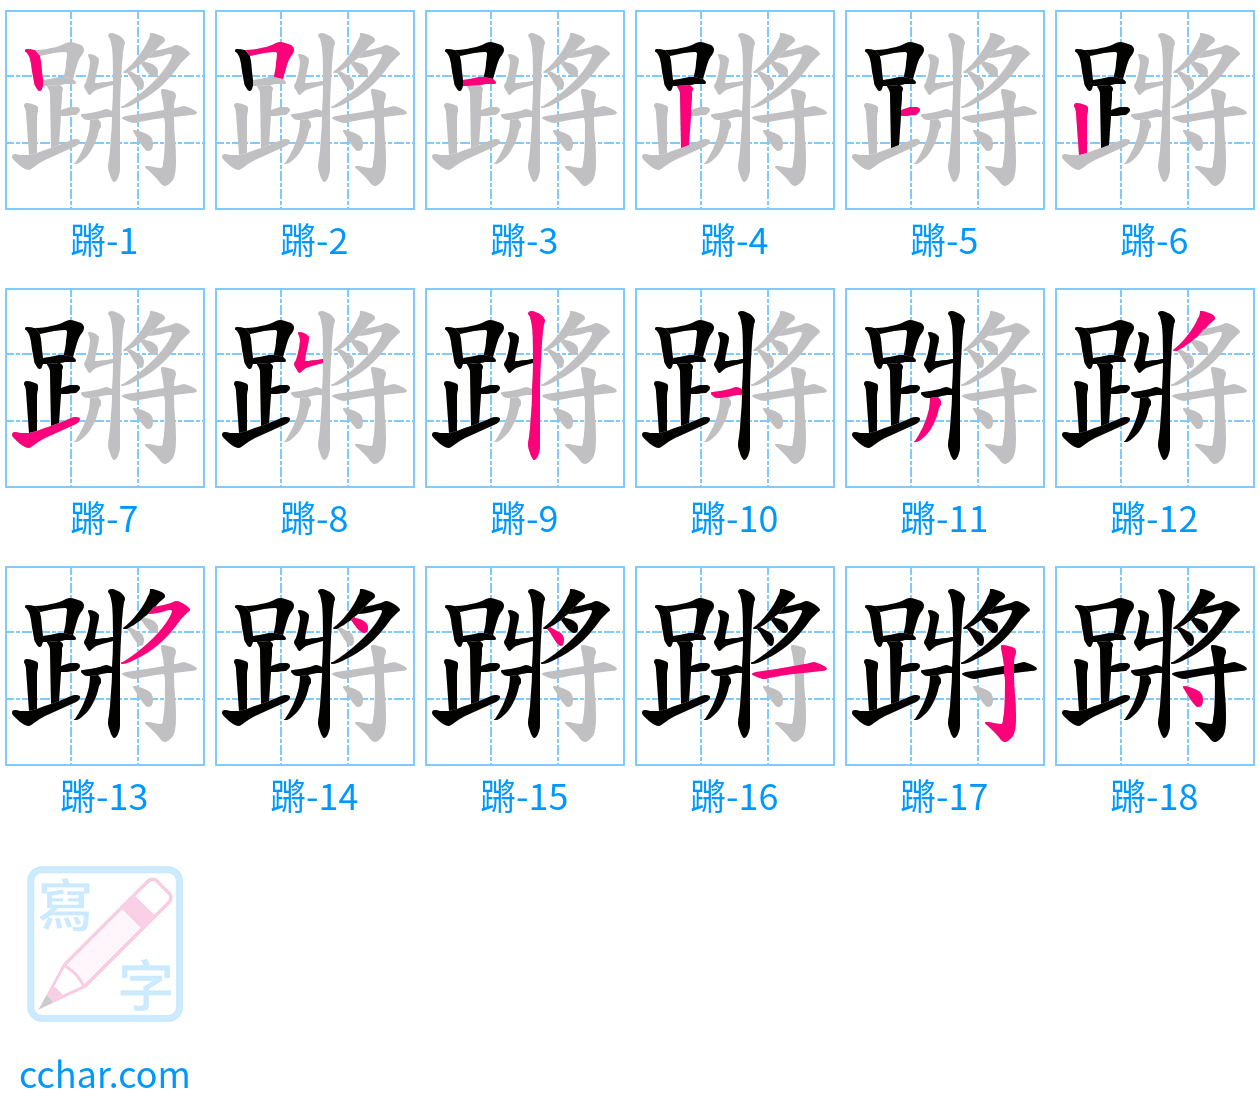 蹡 stroke order step-by-step diagram